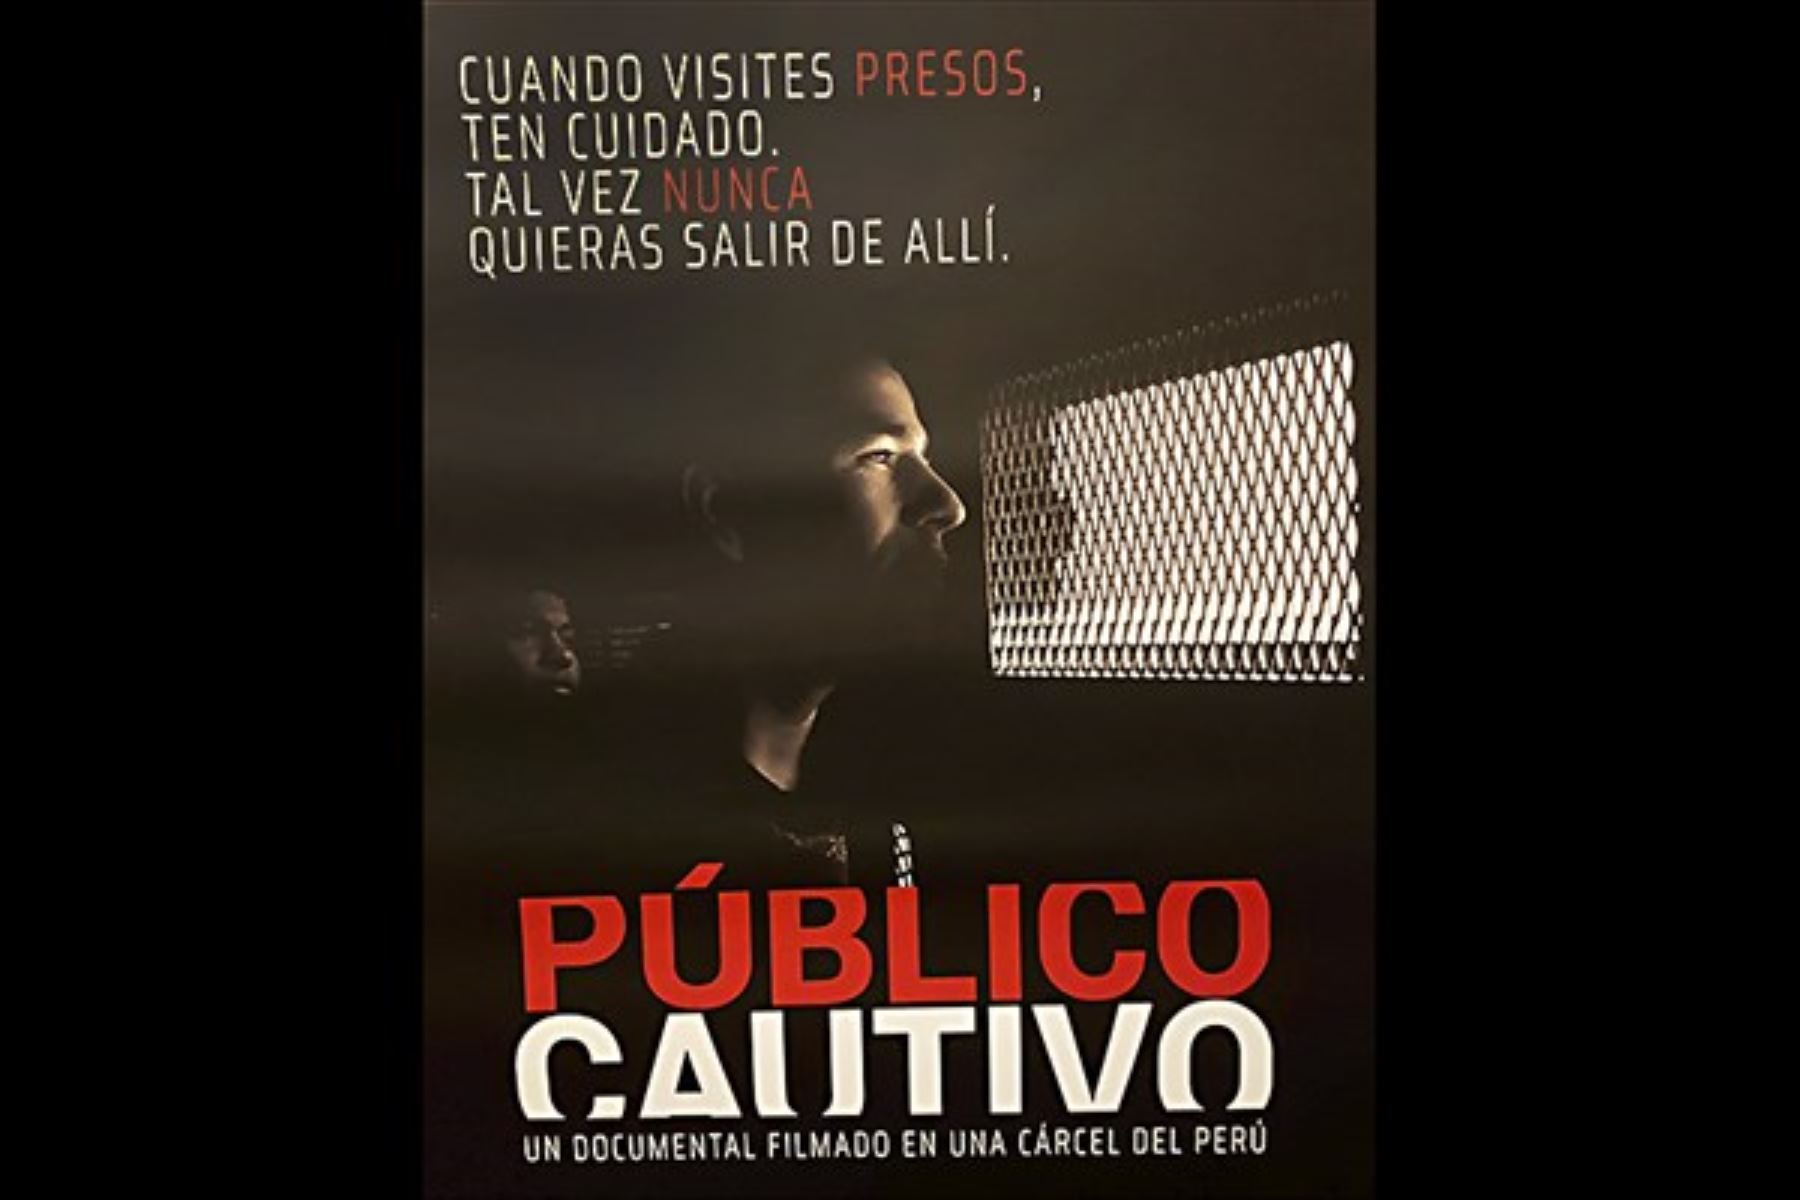 Escena de la película Público cautivo de Beto Ortiz.